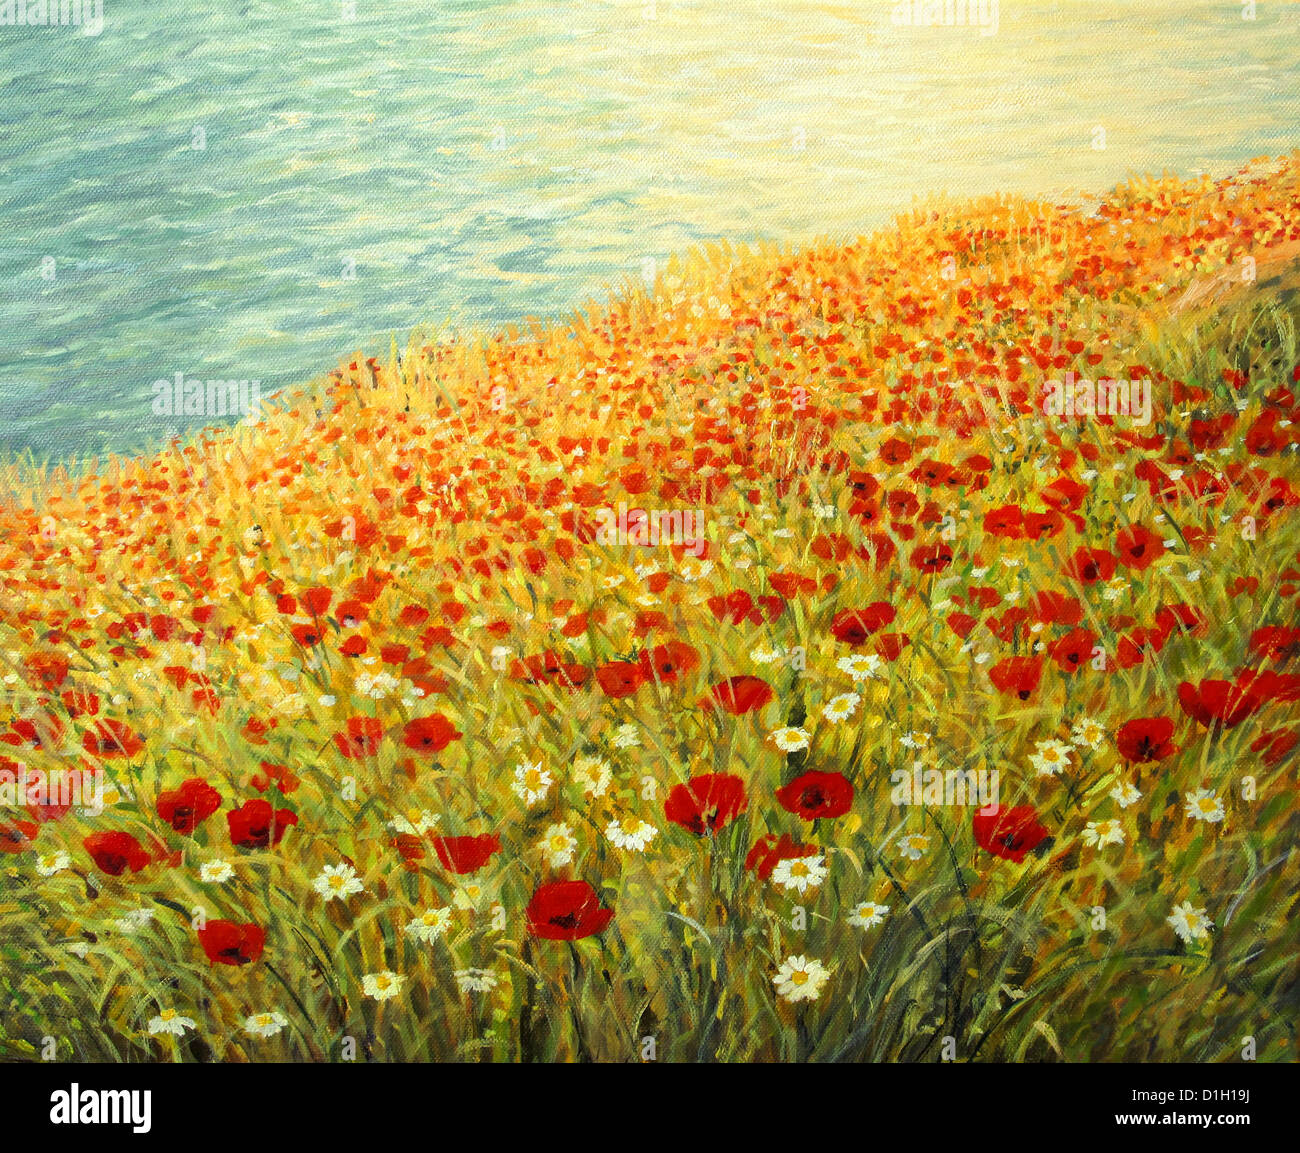 Une peinture à l'huile sur toile d'une scène paisible à la côte avec un tapis aux couleurs vives plein de coquelicots rouge et blanc marguerites. Banque D'Images